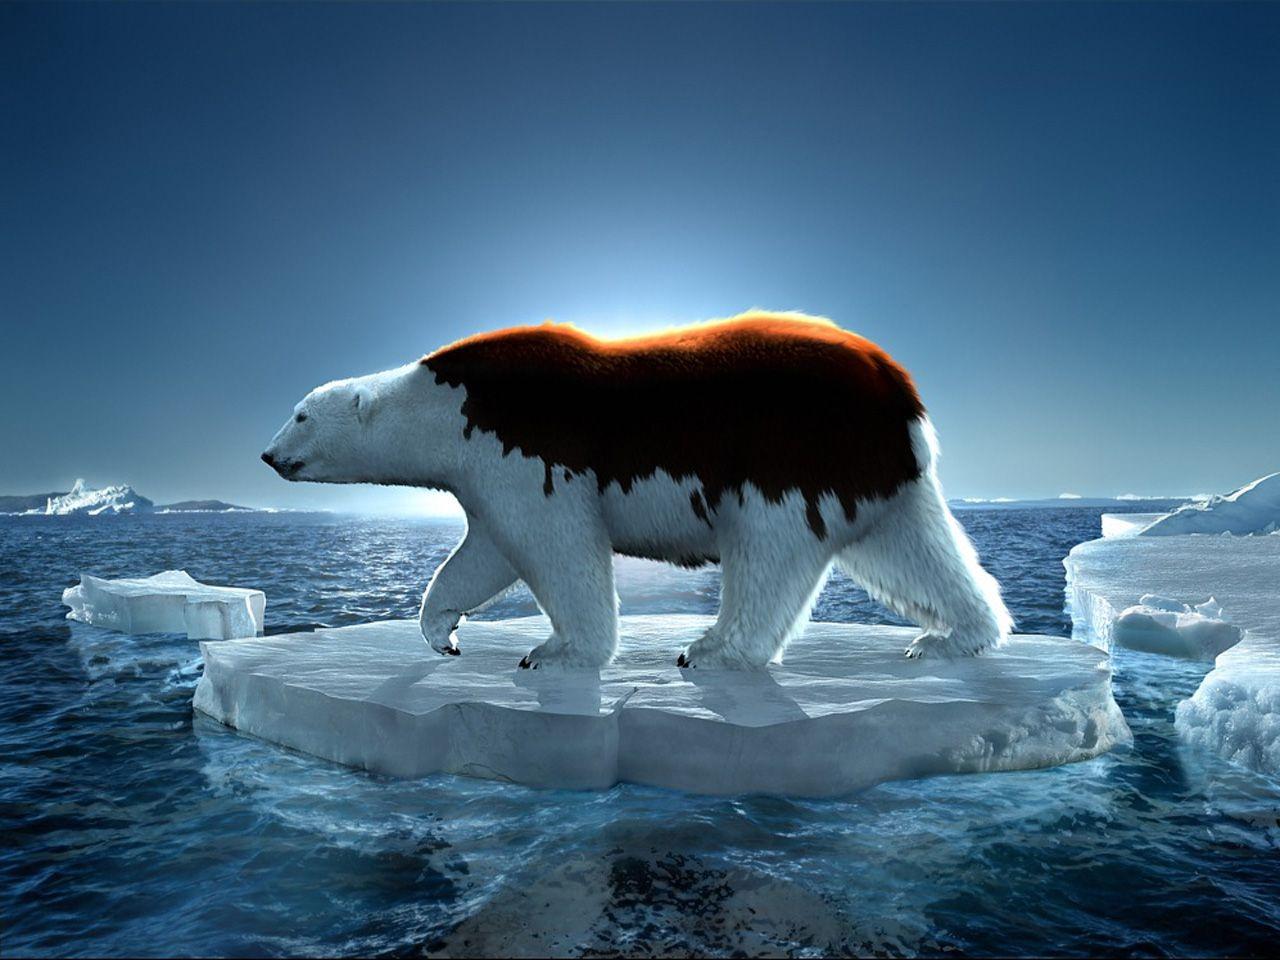 Gấu Bắc Cực GreenPeace 1280x960, 1280 x 960pix